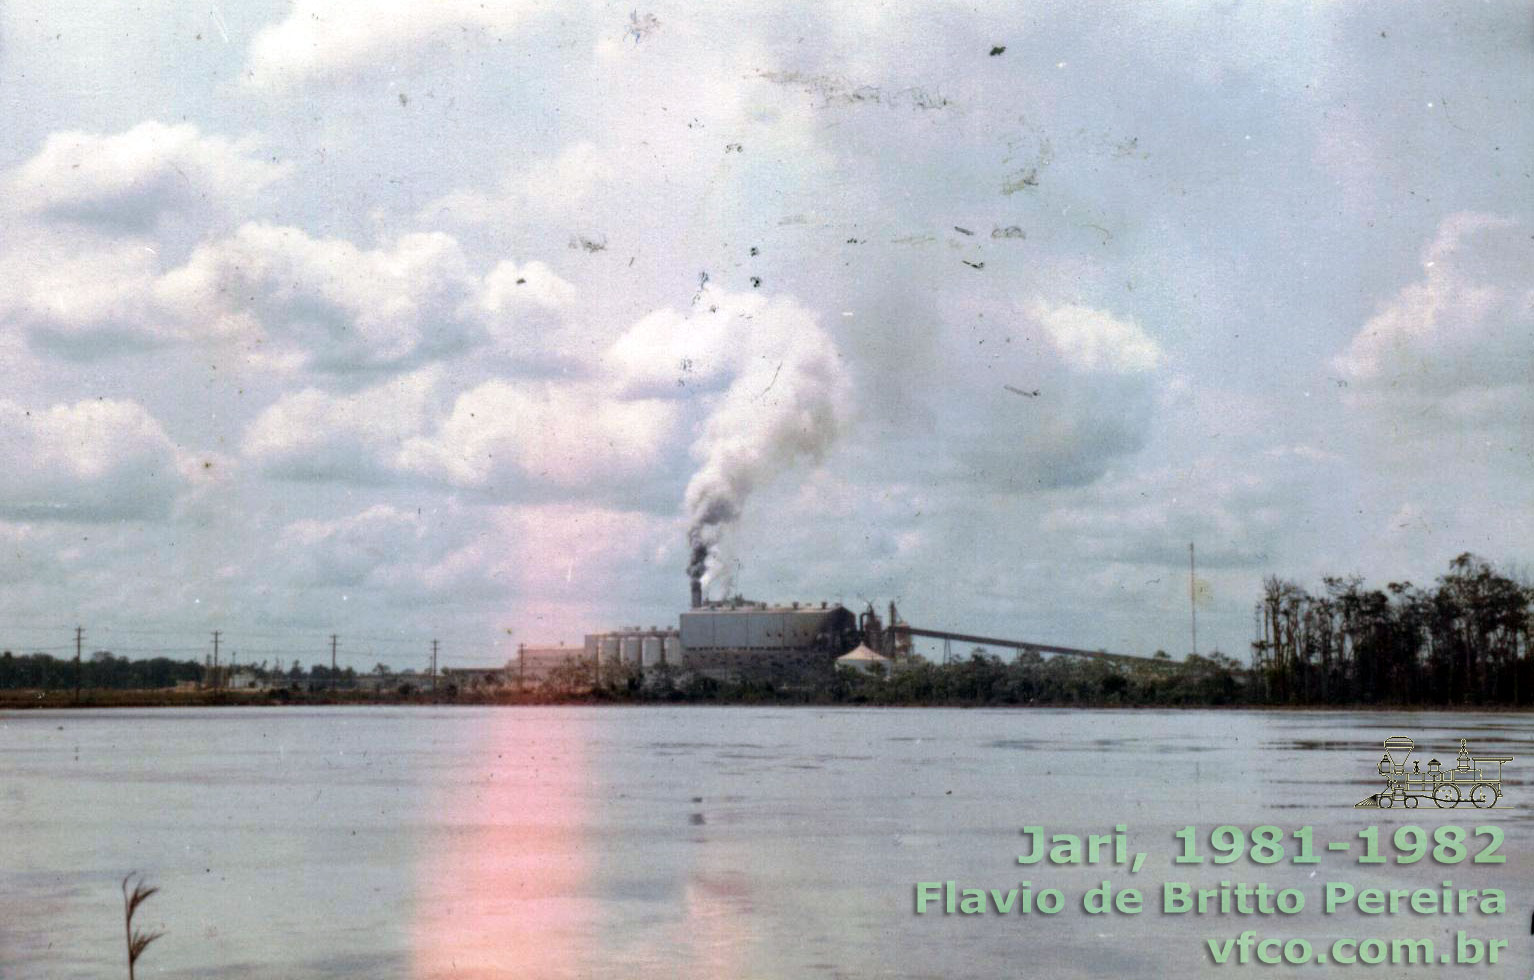 A fábrica de celulose vista desde o rio Jari